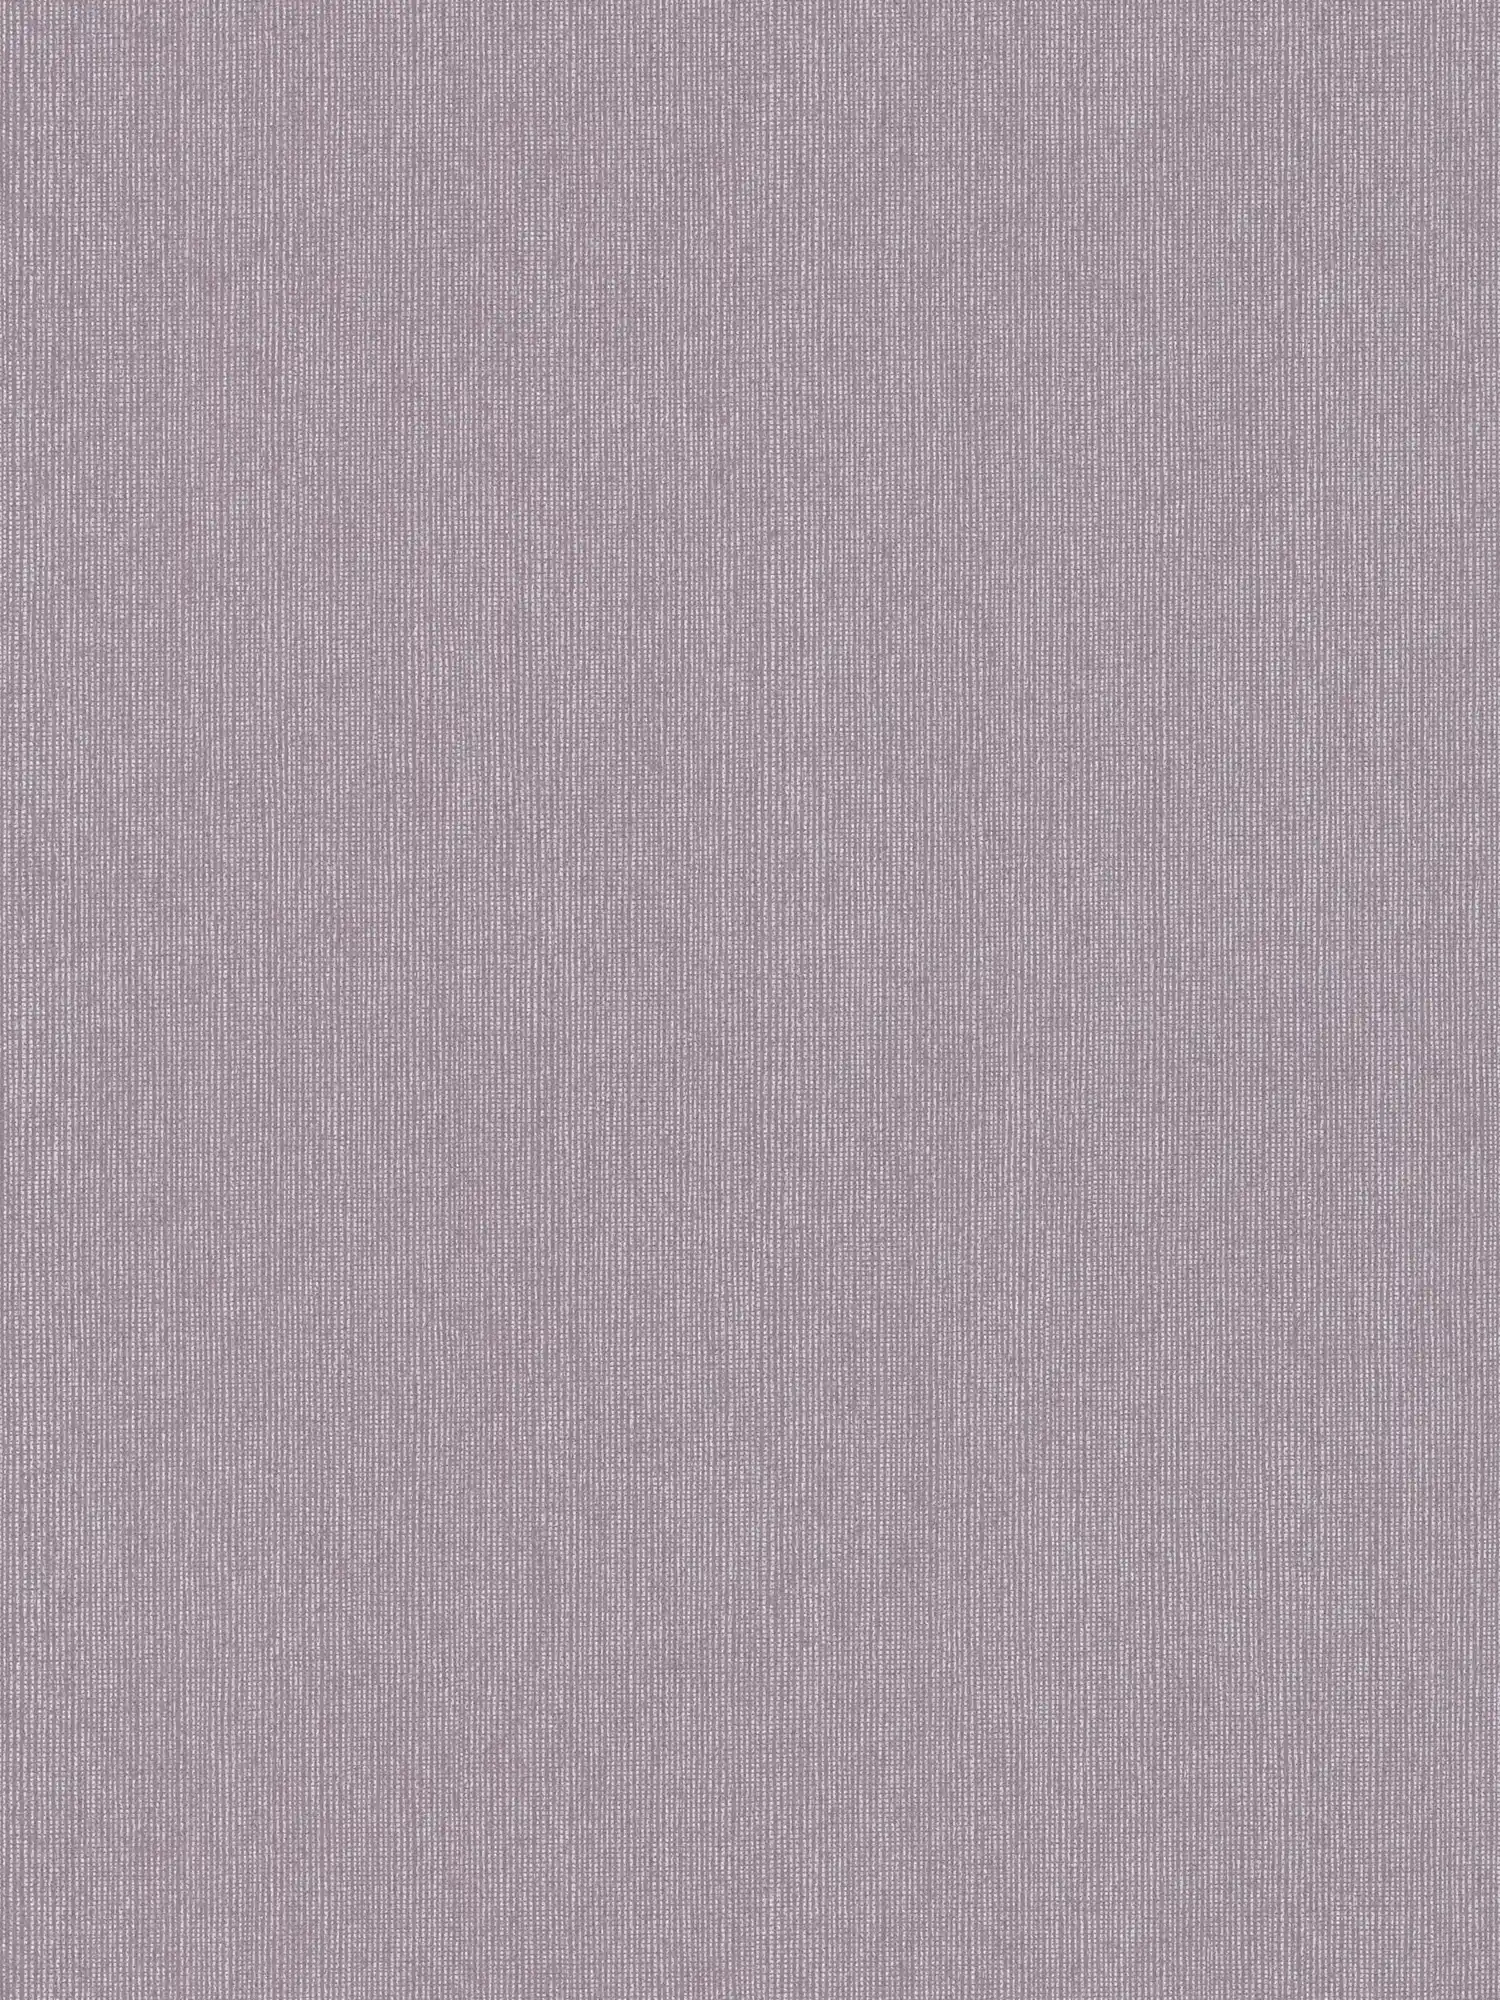 Glanz Tapete mit Textilstruktur & Schimmer Effekt – Lila, Grau
